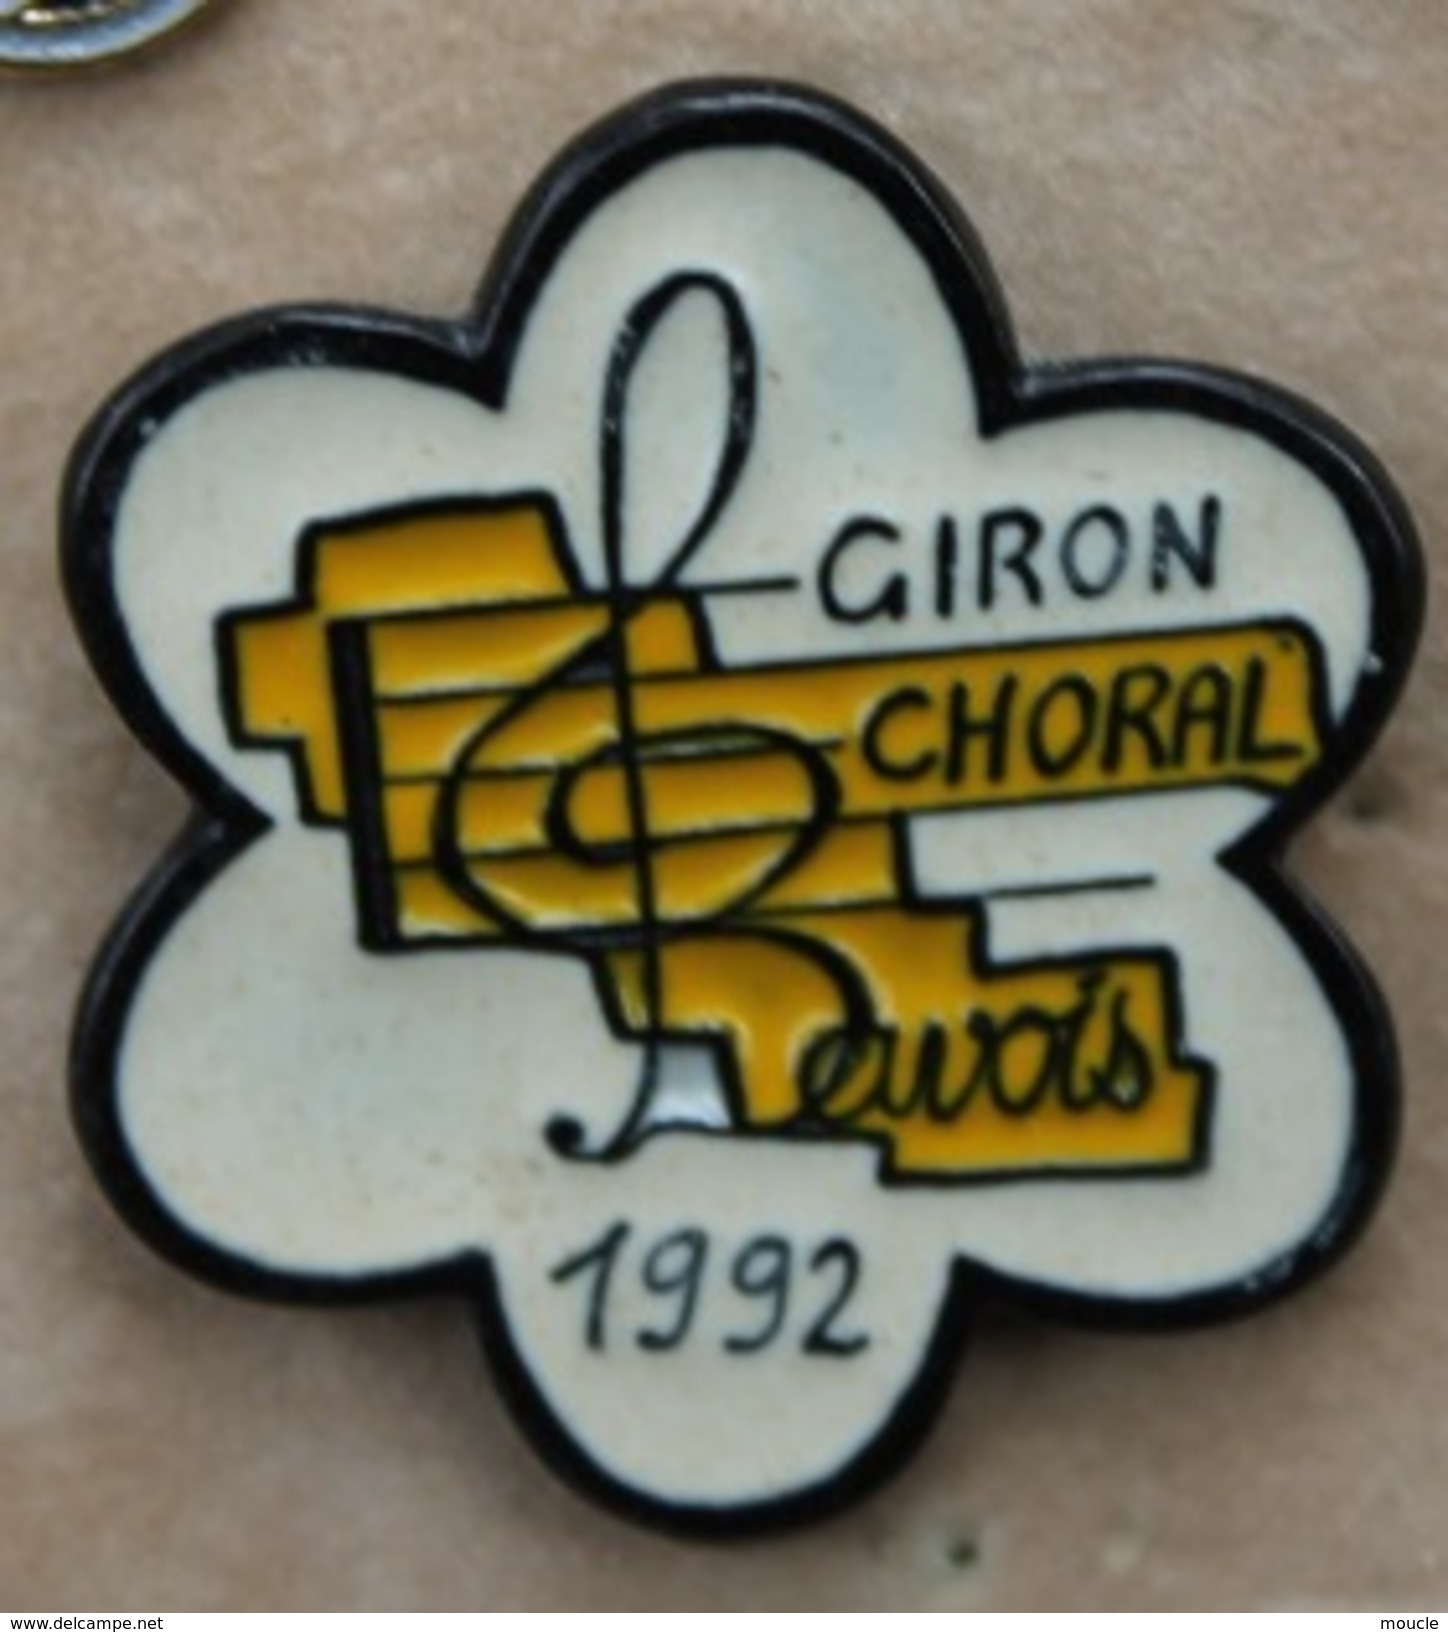 GIRON CHORAL BAVOIS 1992 - CANTON DE VAUD - SUISSE - SWISS -SCHWEIZ -  PARTITION - CLE -     (19) - Musique